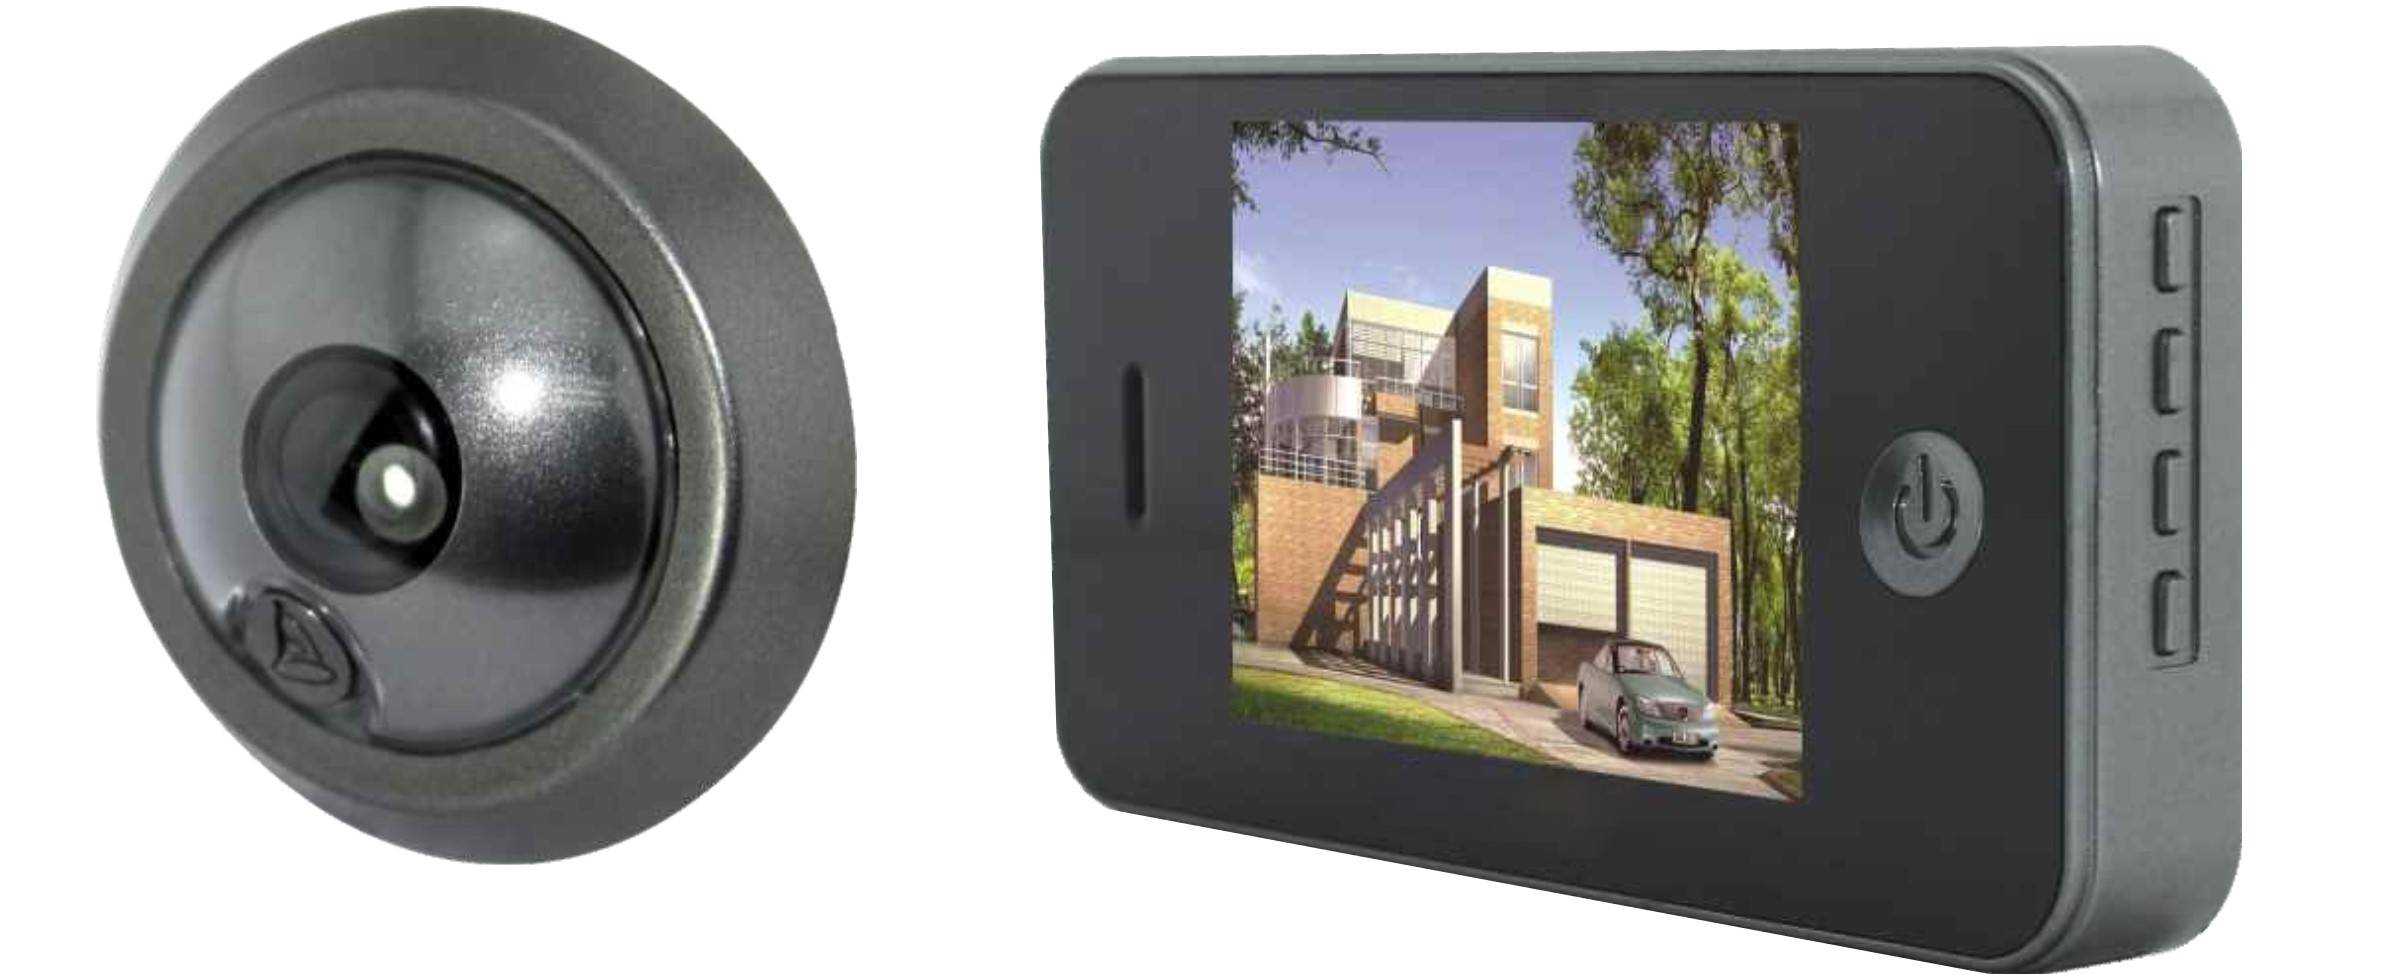 Видеоглазки на входную дверь в квартиру. Видеоглазок ESCAM C 07 для входной двери с датчиком движения. Wi-Fi дверной глазок. Видеоглазок w1 (Wi-Fi). Дверной глазок с видеокамерой и датчиком движения WIFI.